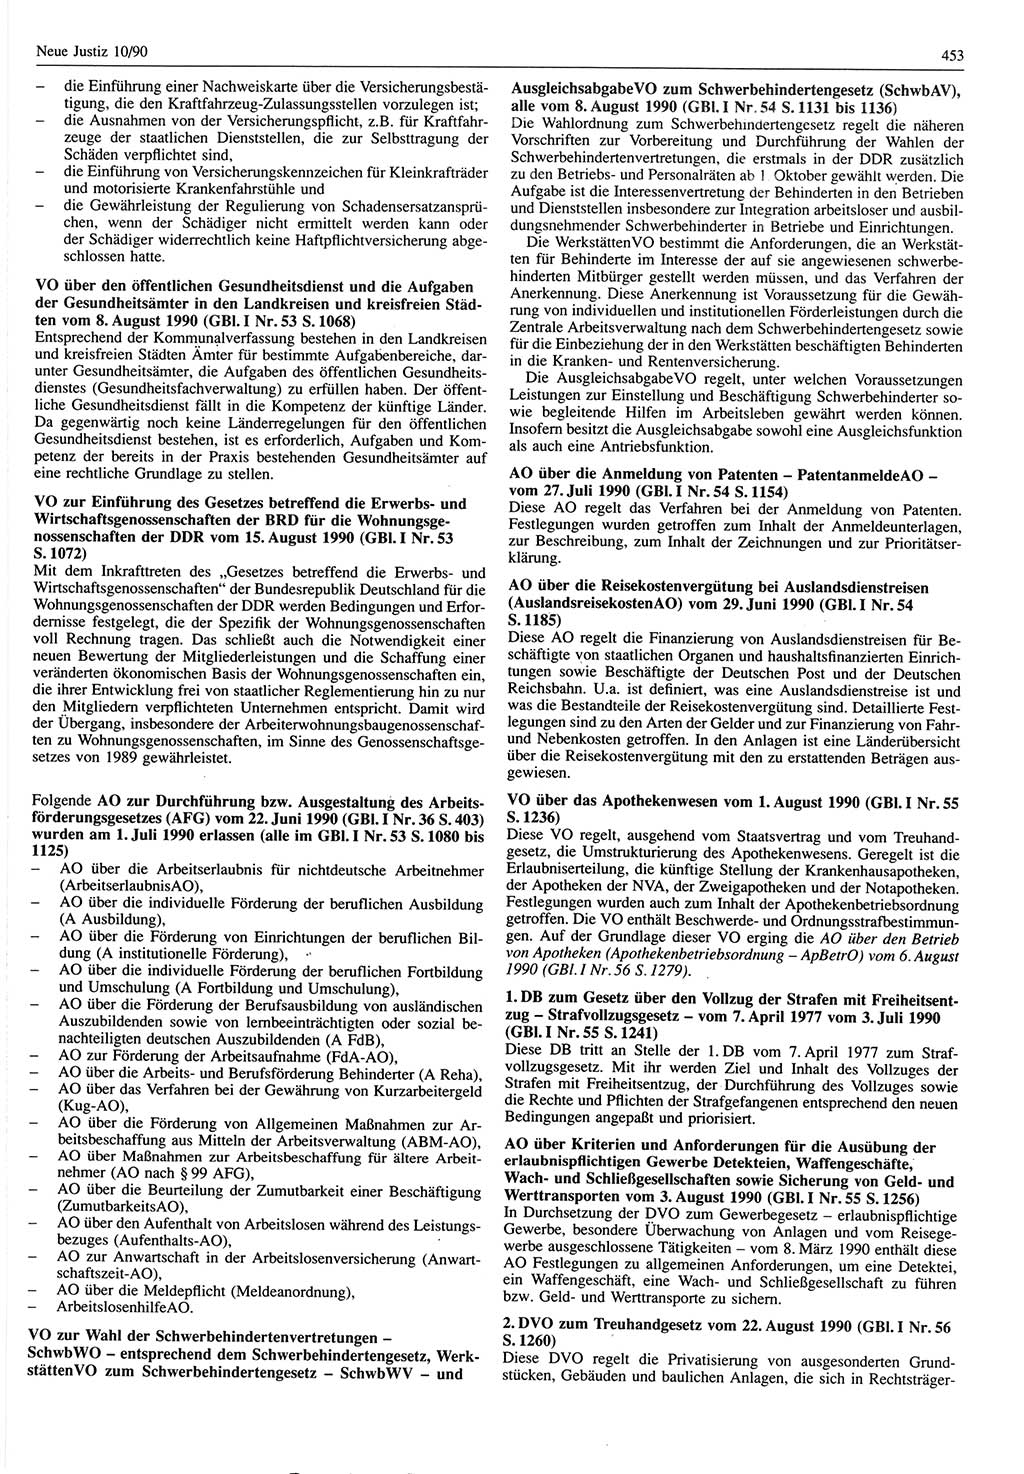 Neue Justiz (NJ), Zeitschrift für Rechtsetzung und Rechtsanwendung [Deutsche Demokratische Republik (DDR)], 44. Jahrgang 1990, Seite 453 (NJ DDR 1990, S. 453)